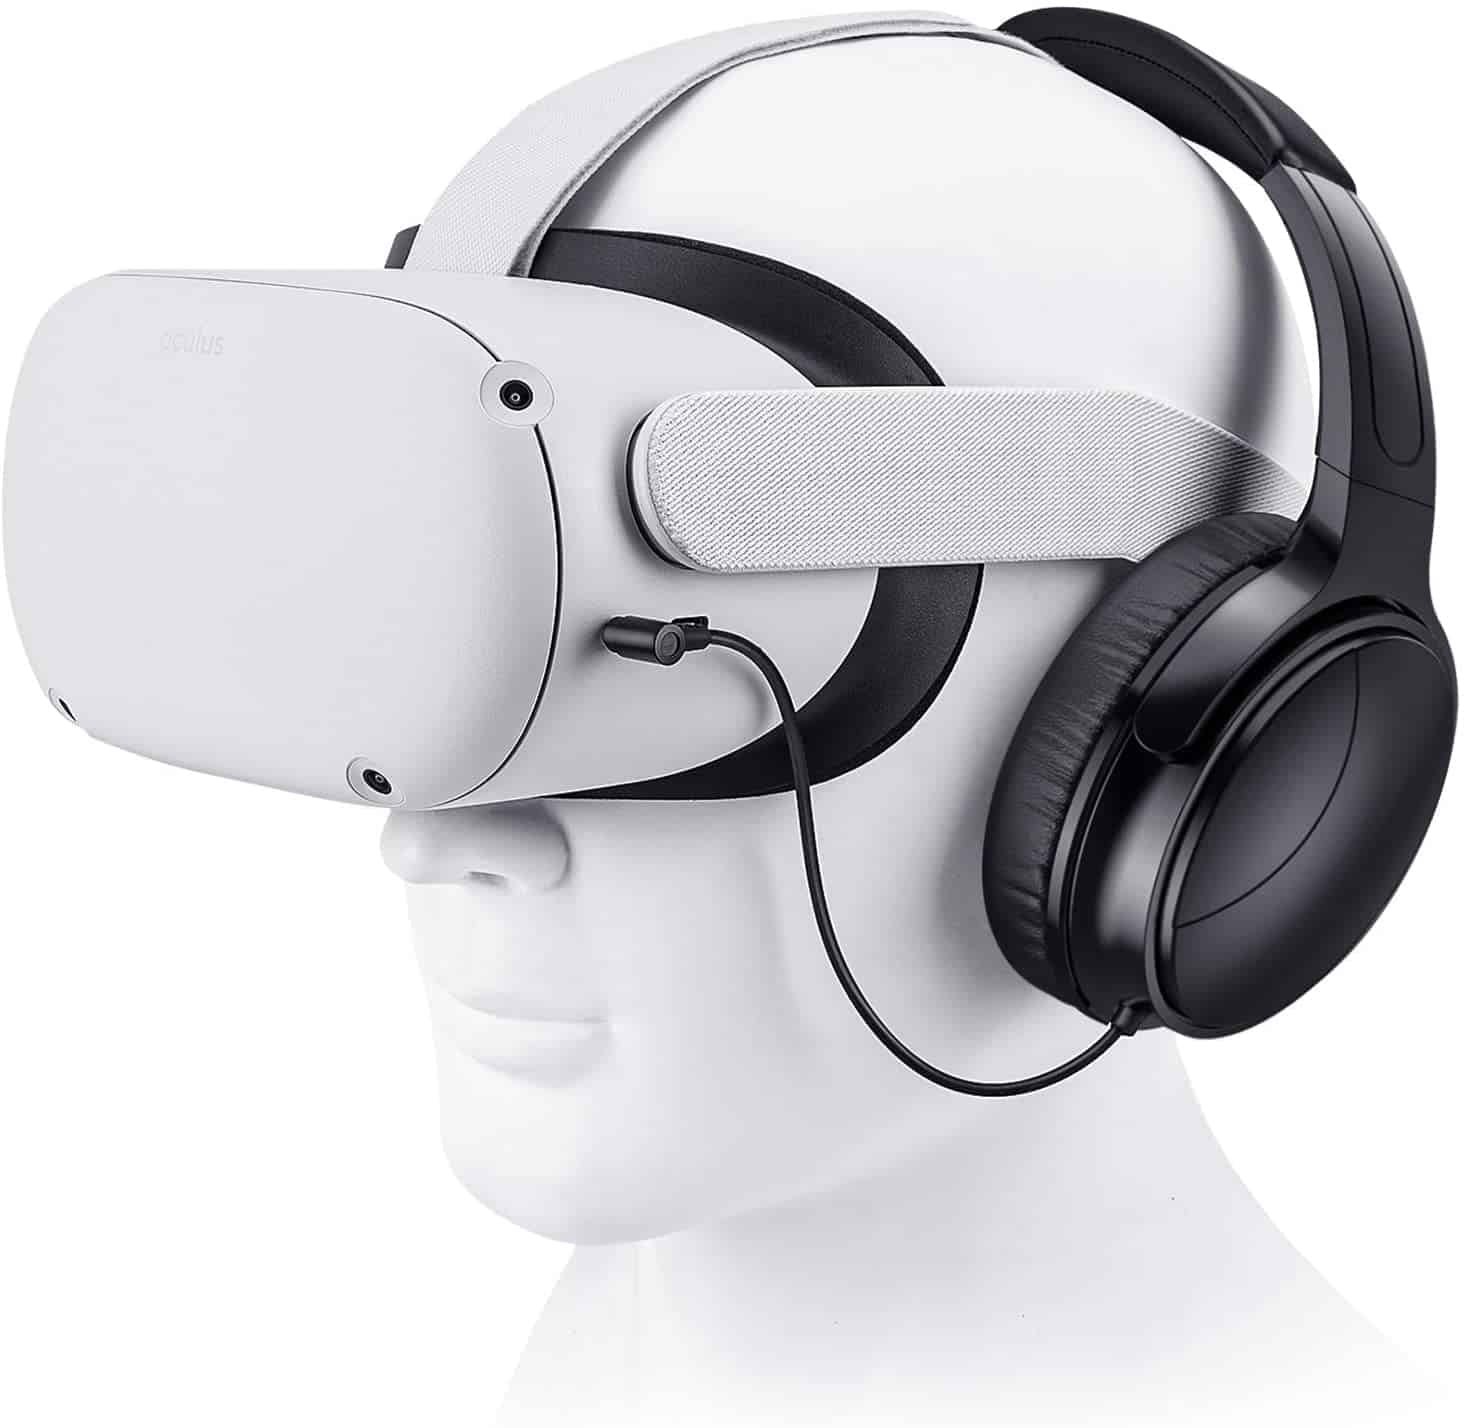 SARLAR VR Gaming Headphones